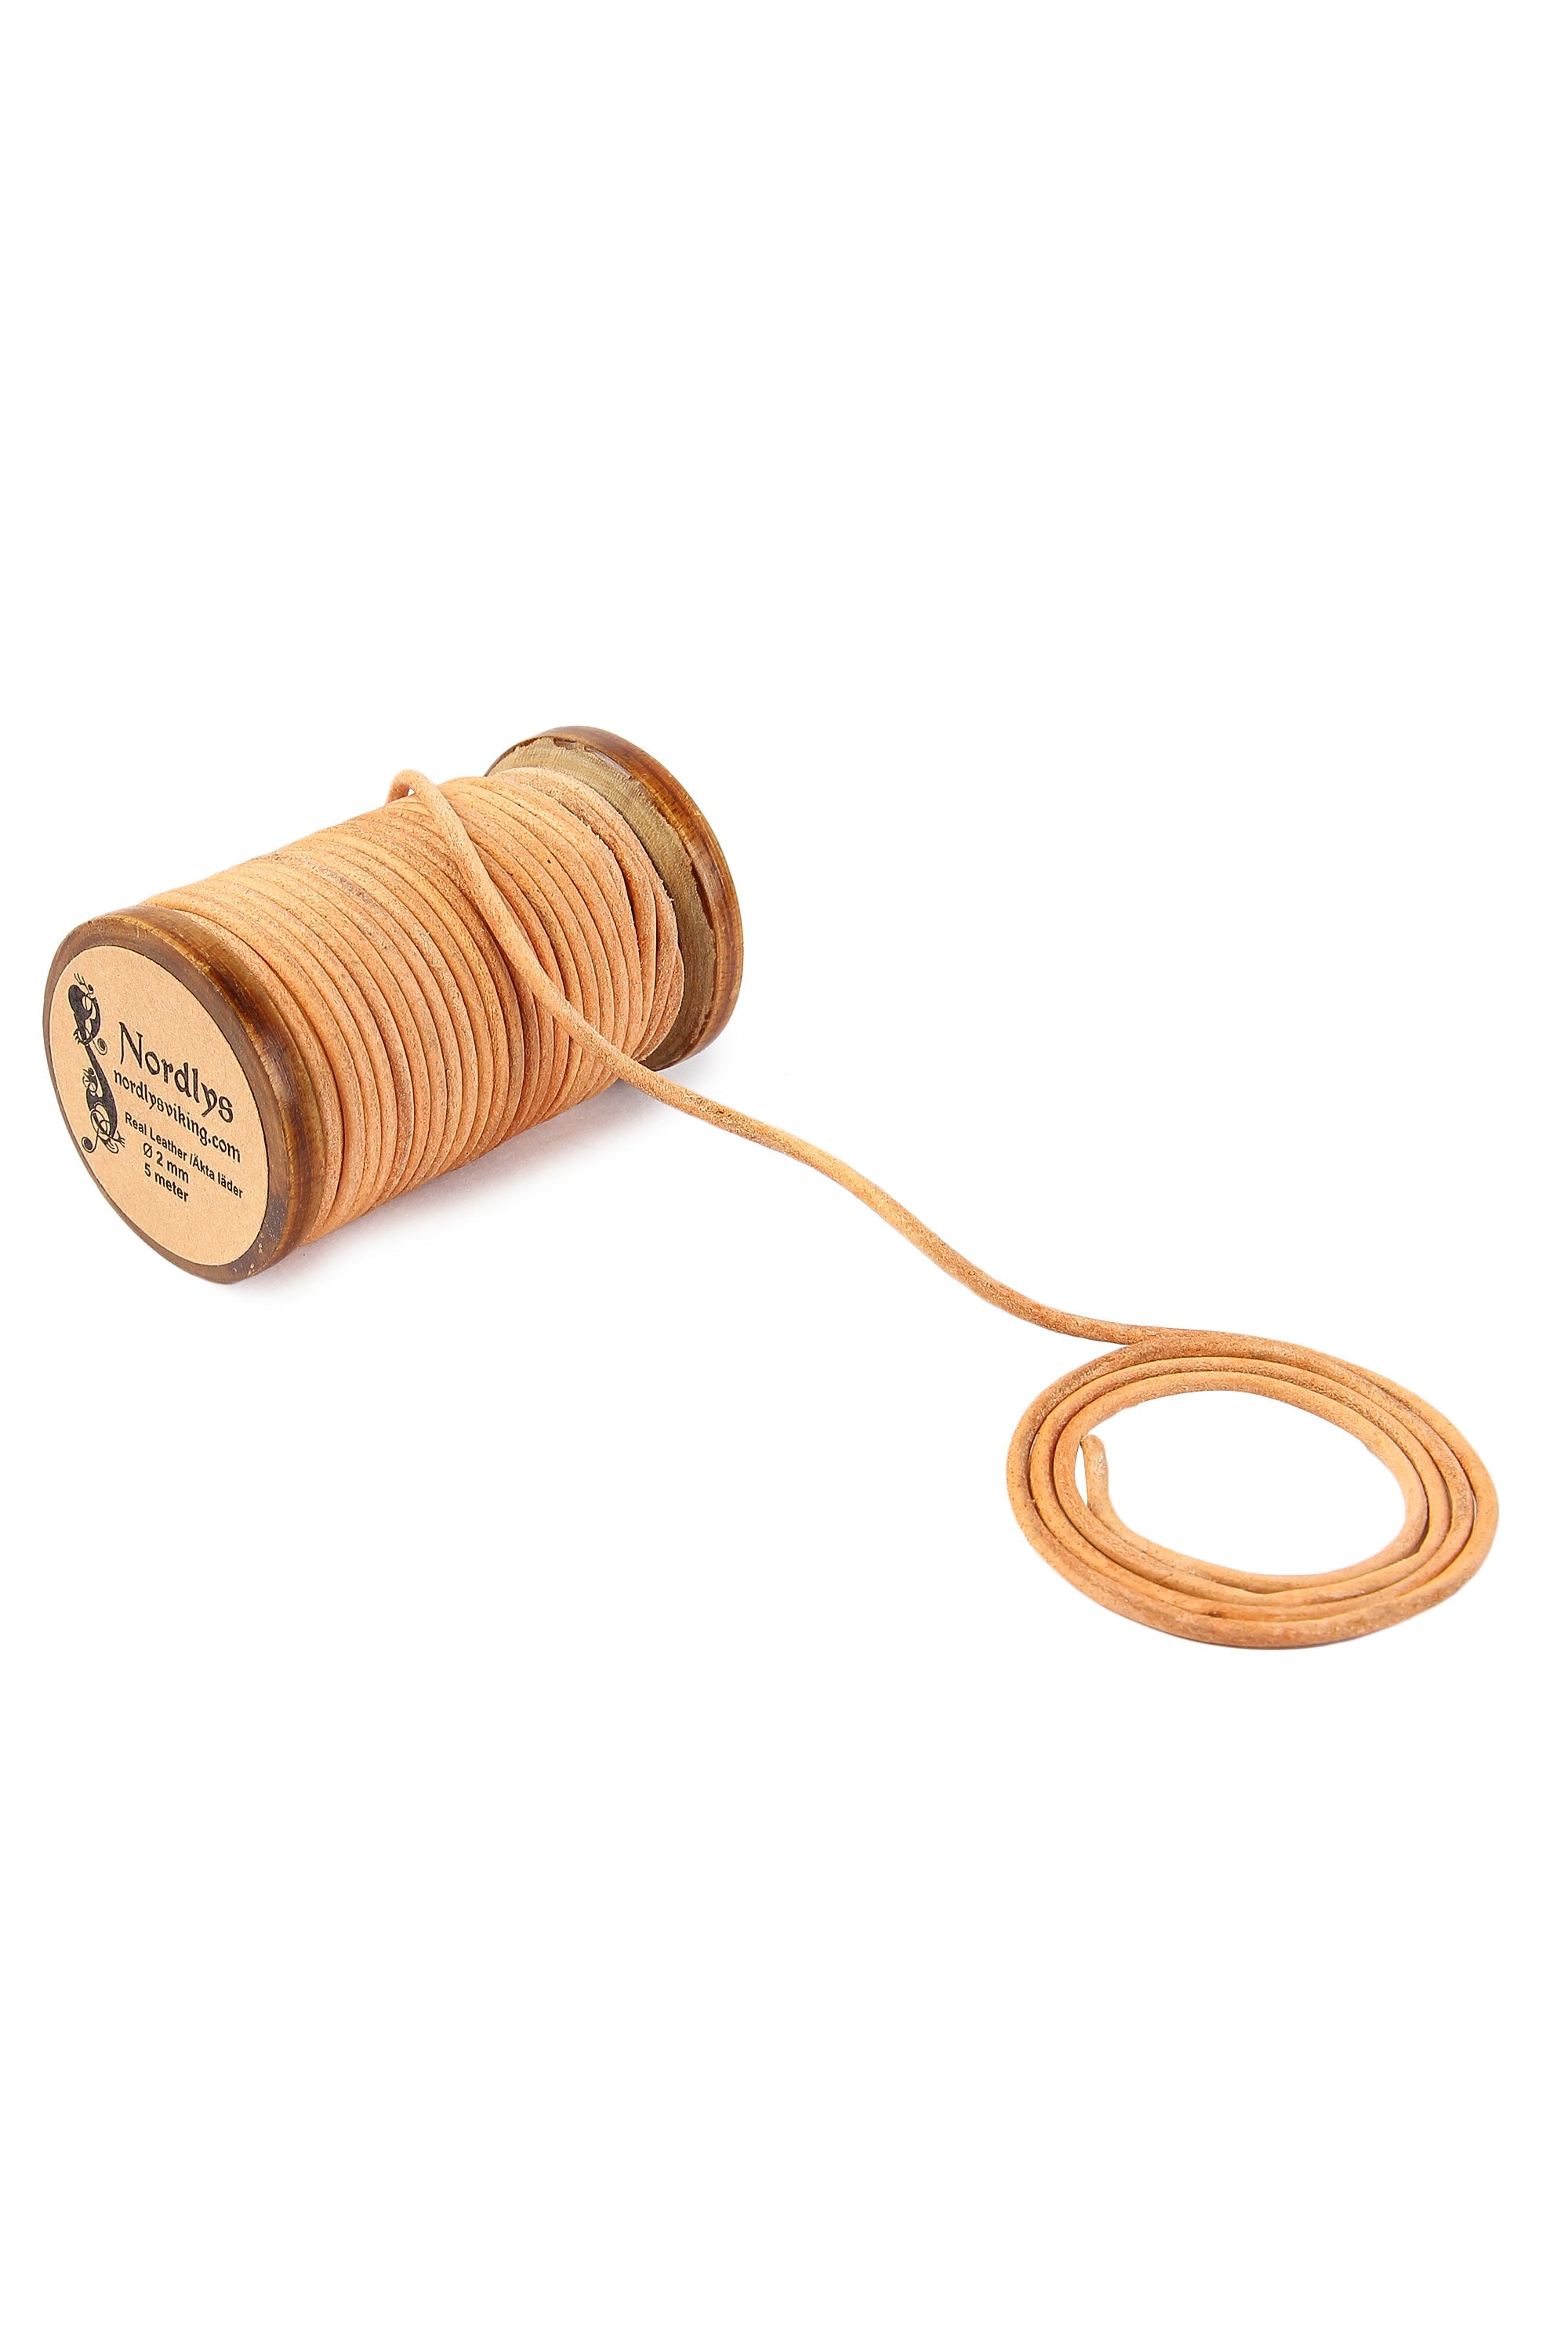  tjocklek 2 millimeter. Upprullad på en traditionell träspole. Hög kvalitet och skarvfri. Tillverkad av vegetabiliskt garvat läder. En snygg och praktisk tråd.
